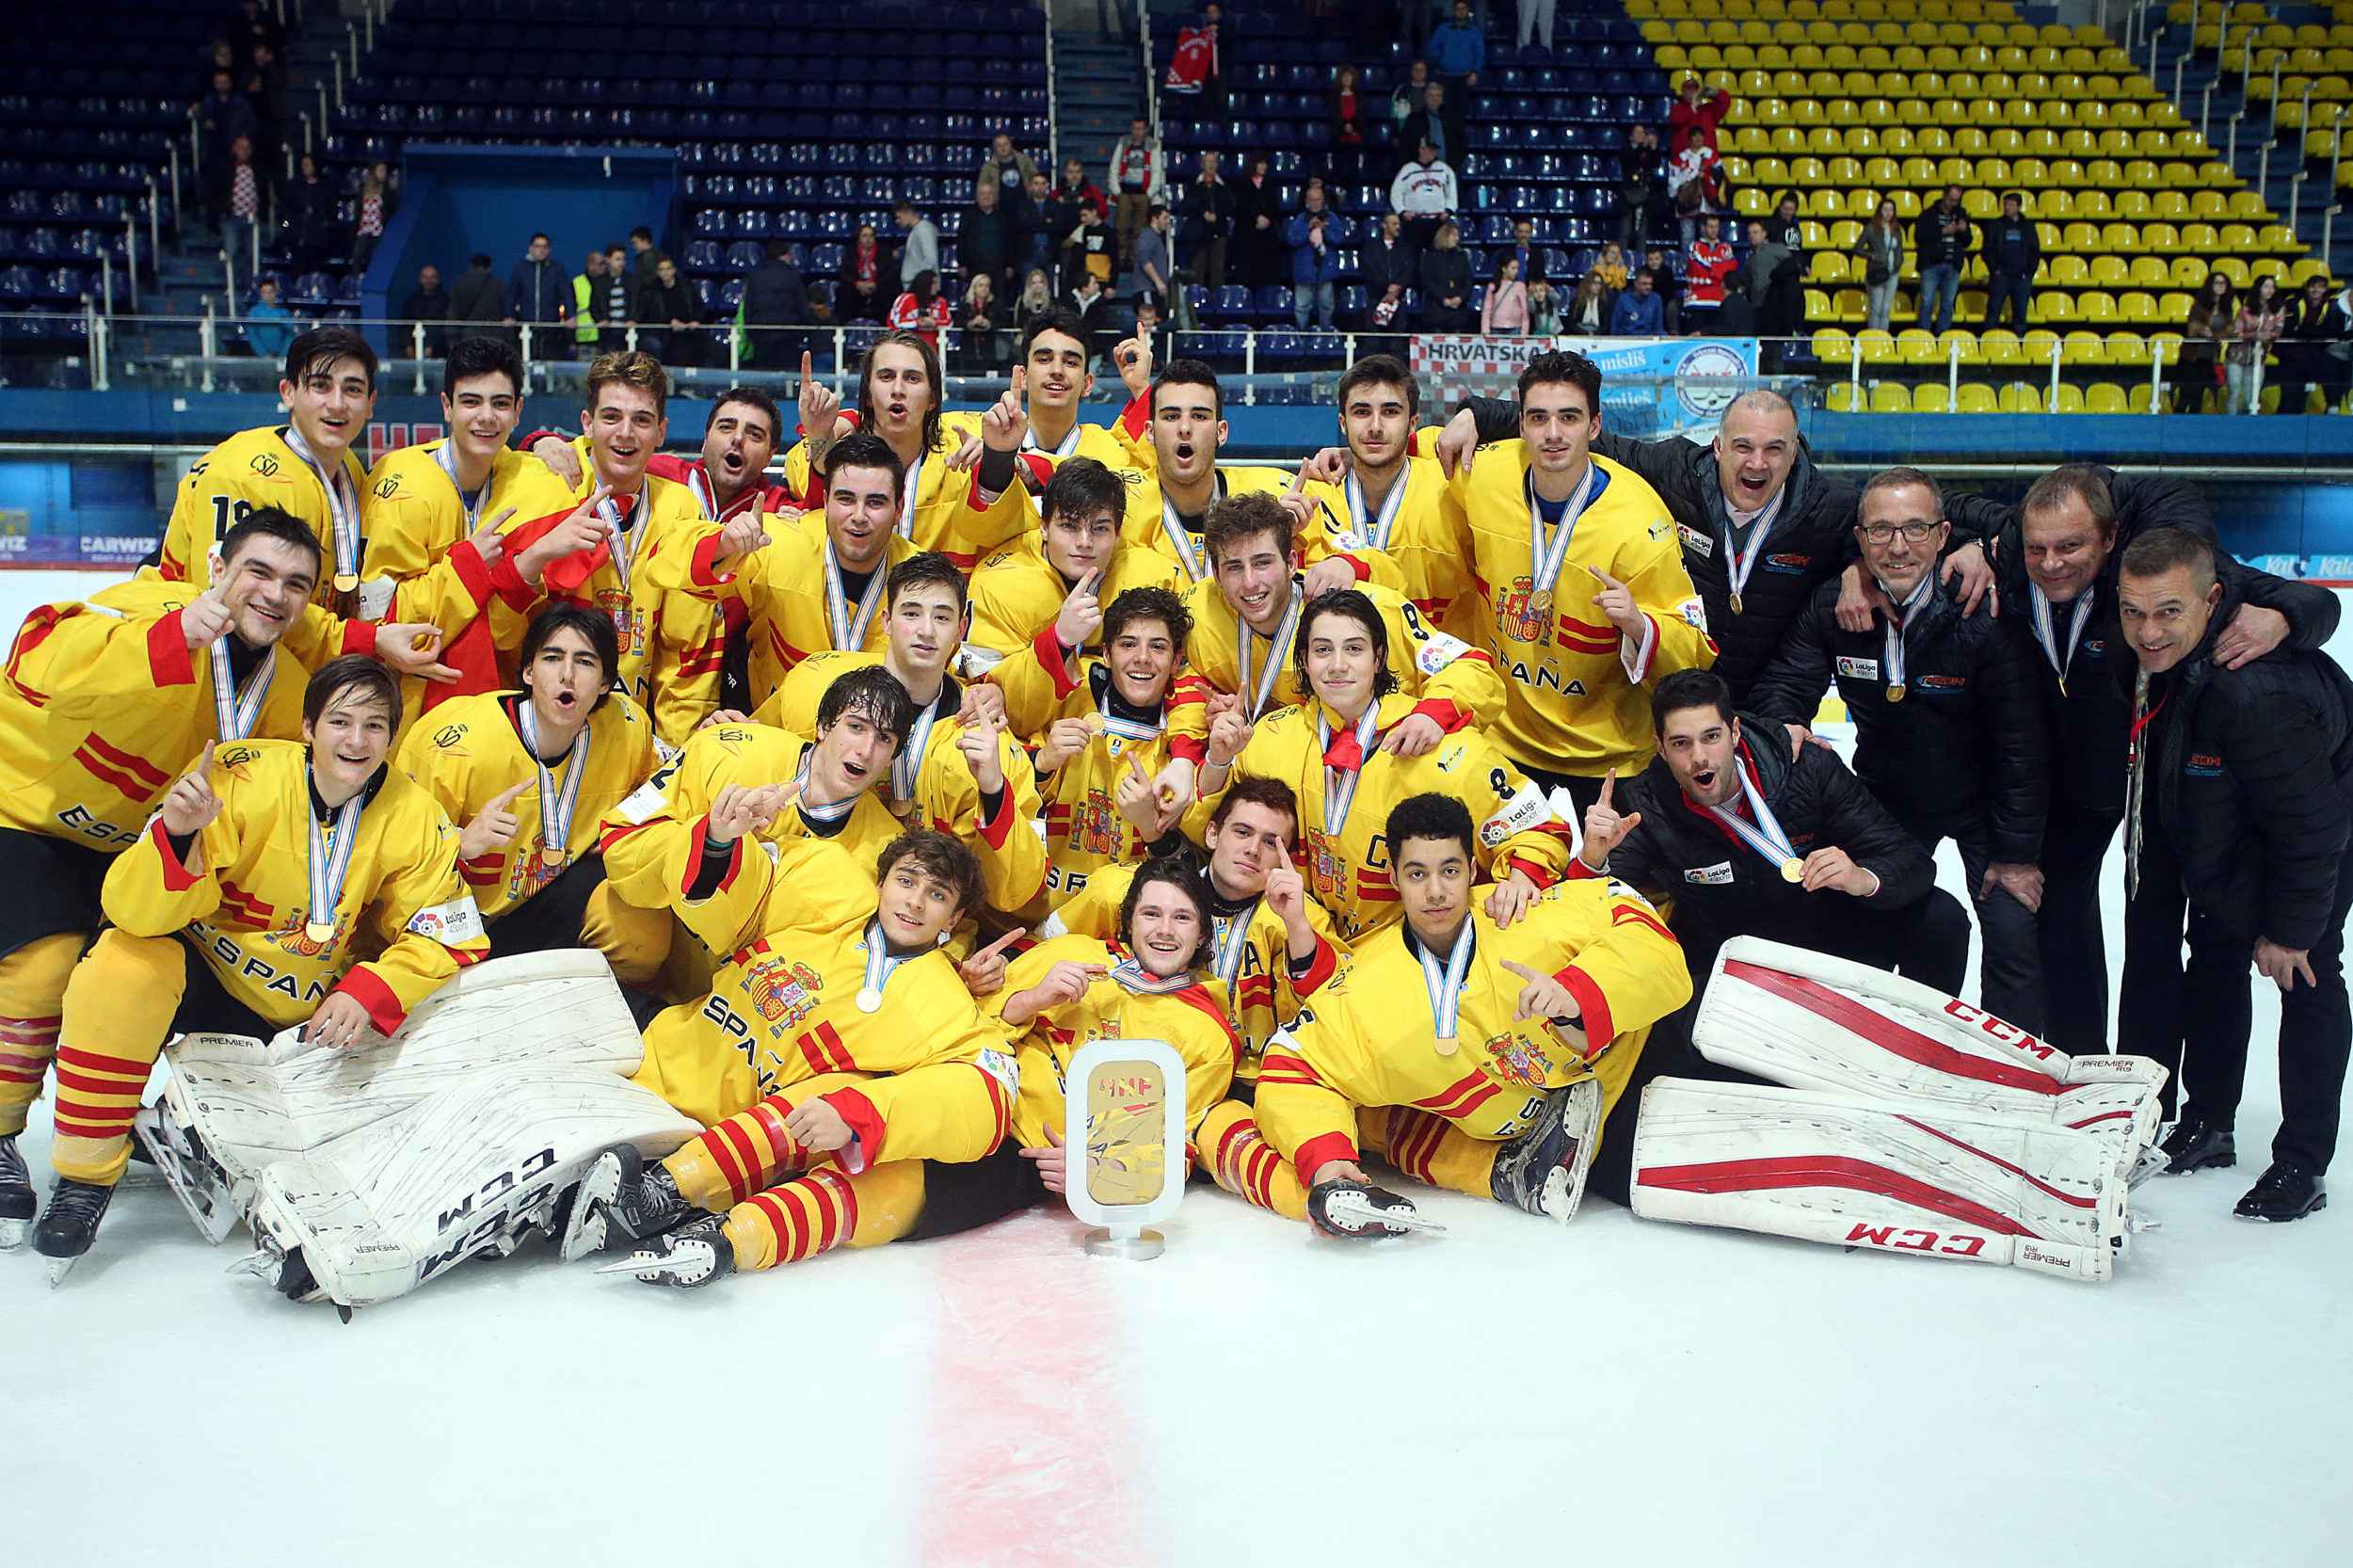 , La Selección U18 gana el Mundial de Zagreb. ¡3 oros en 4 Mundiales para España!, Real Federación Española Deportes de Hielo